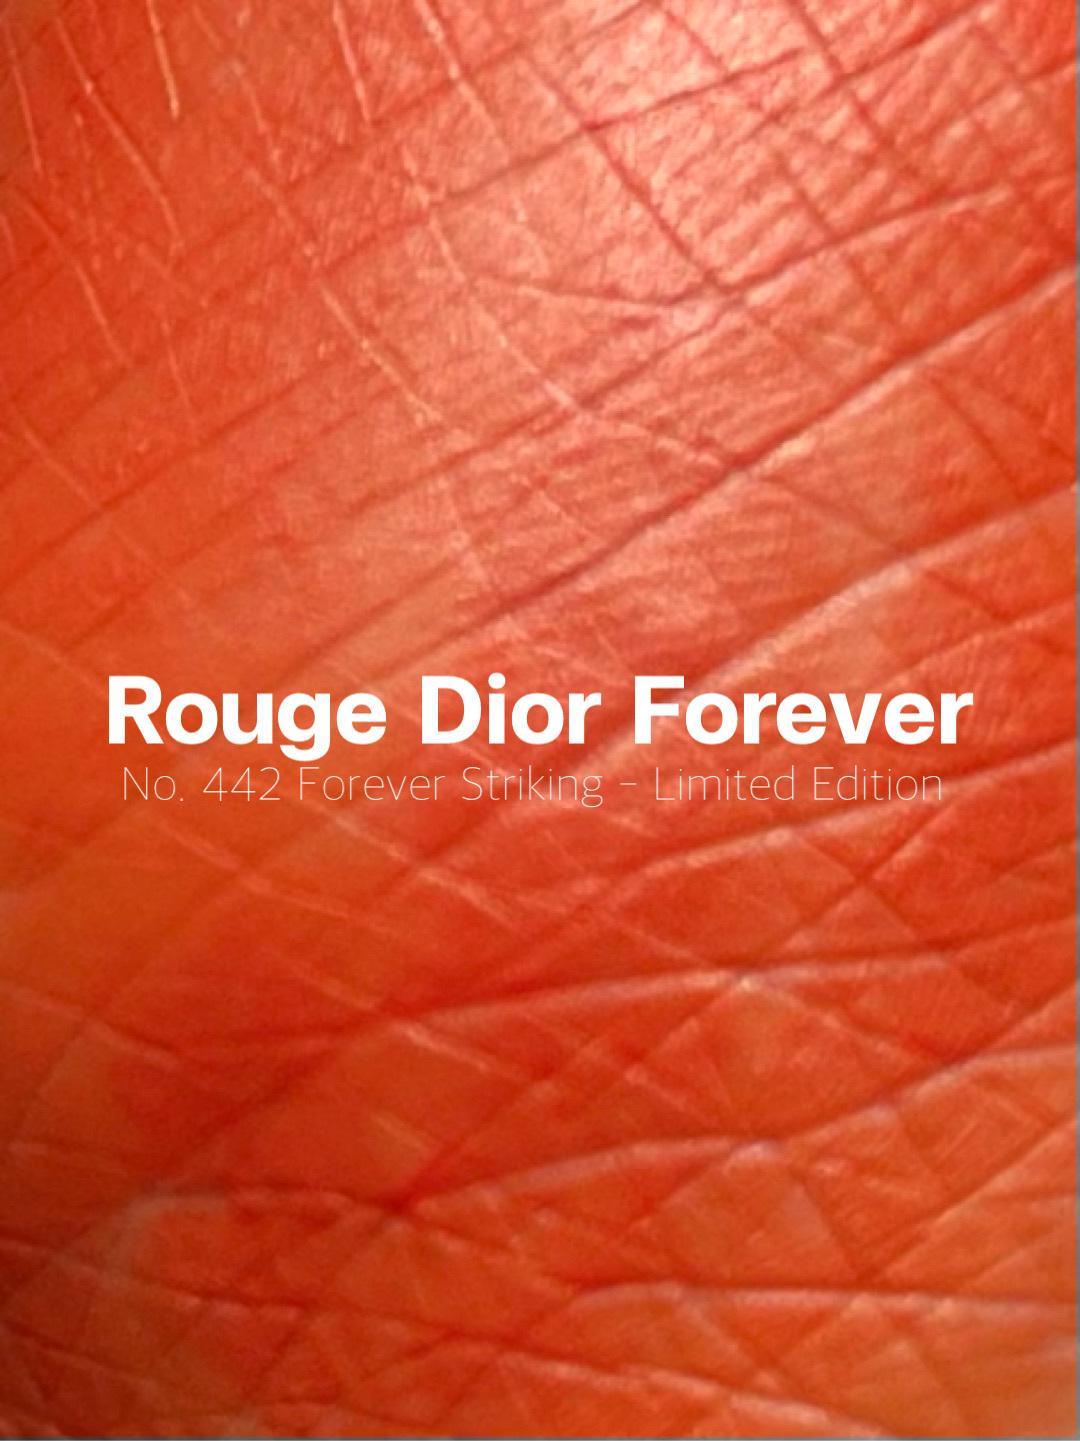 ภาพหน้าปก ลิปใหม่จาก Dior ไม่ติดแมสก์จริงหรอ?ท ที่:2